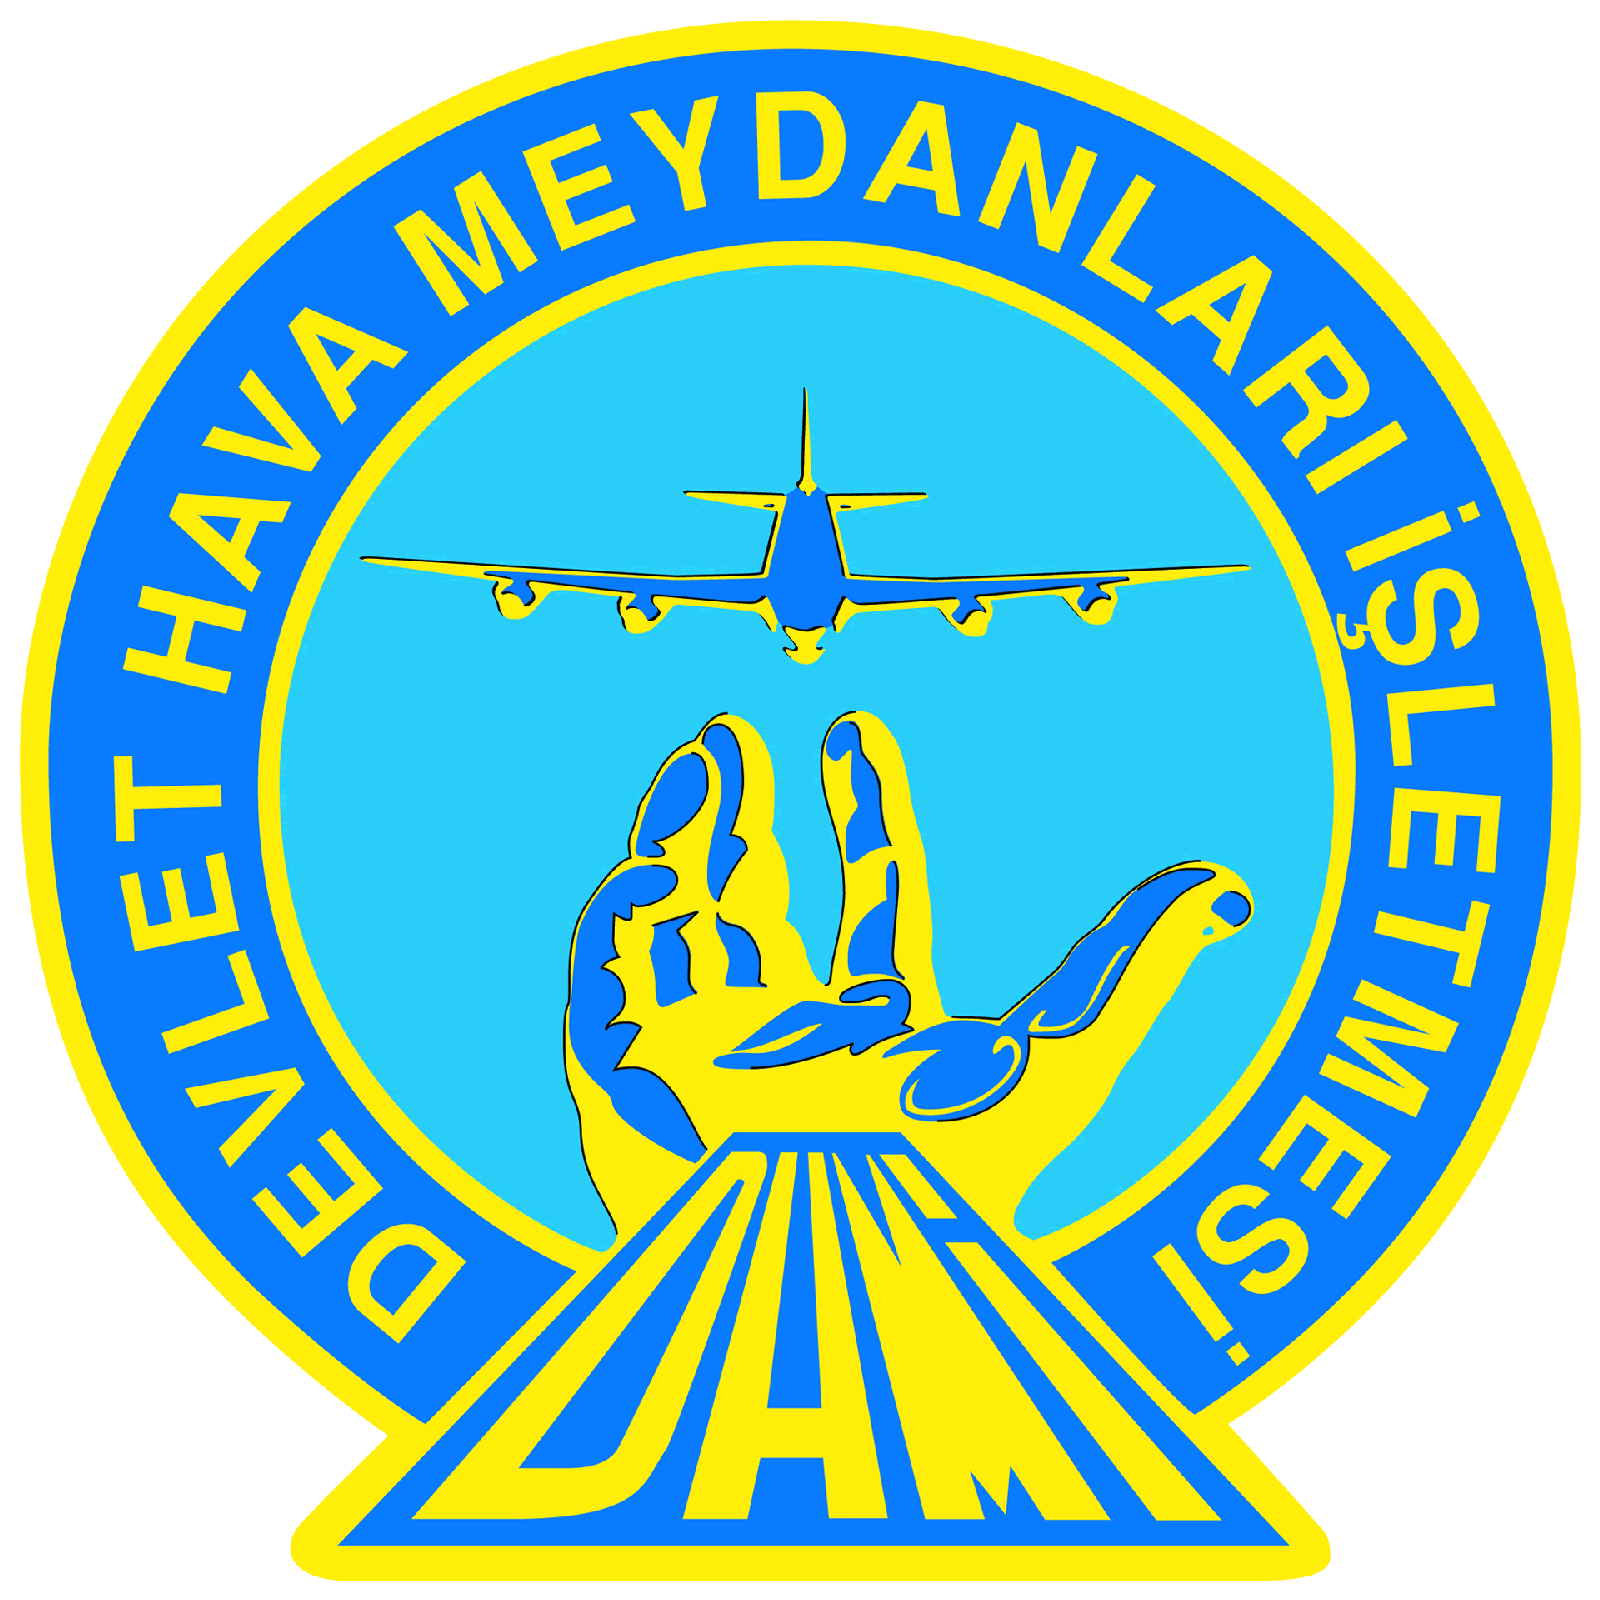 DHMİ – Devlet Hava Meydanları İşletmesi Genel Müdürlüğü Logosu [dhmi.gov.tr] png